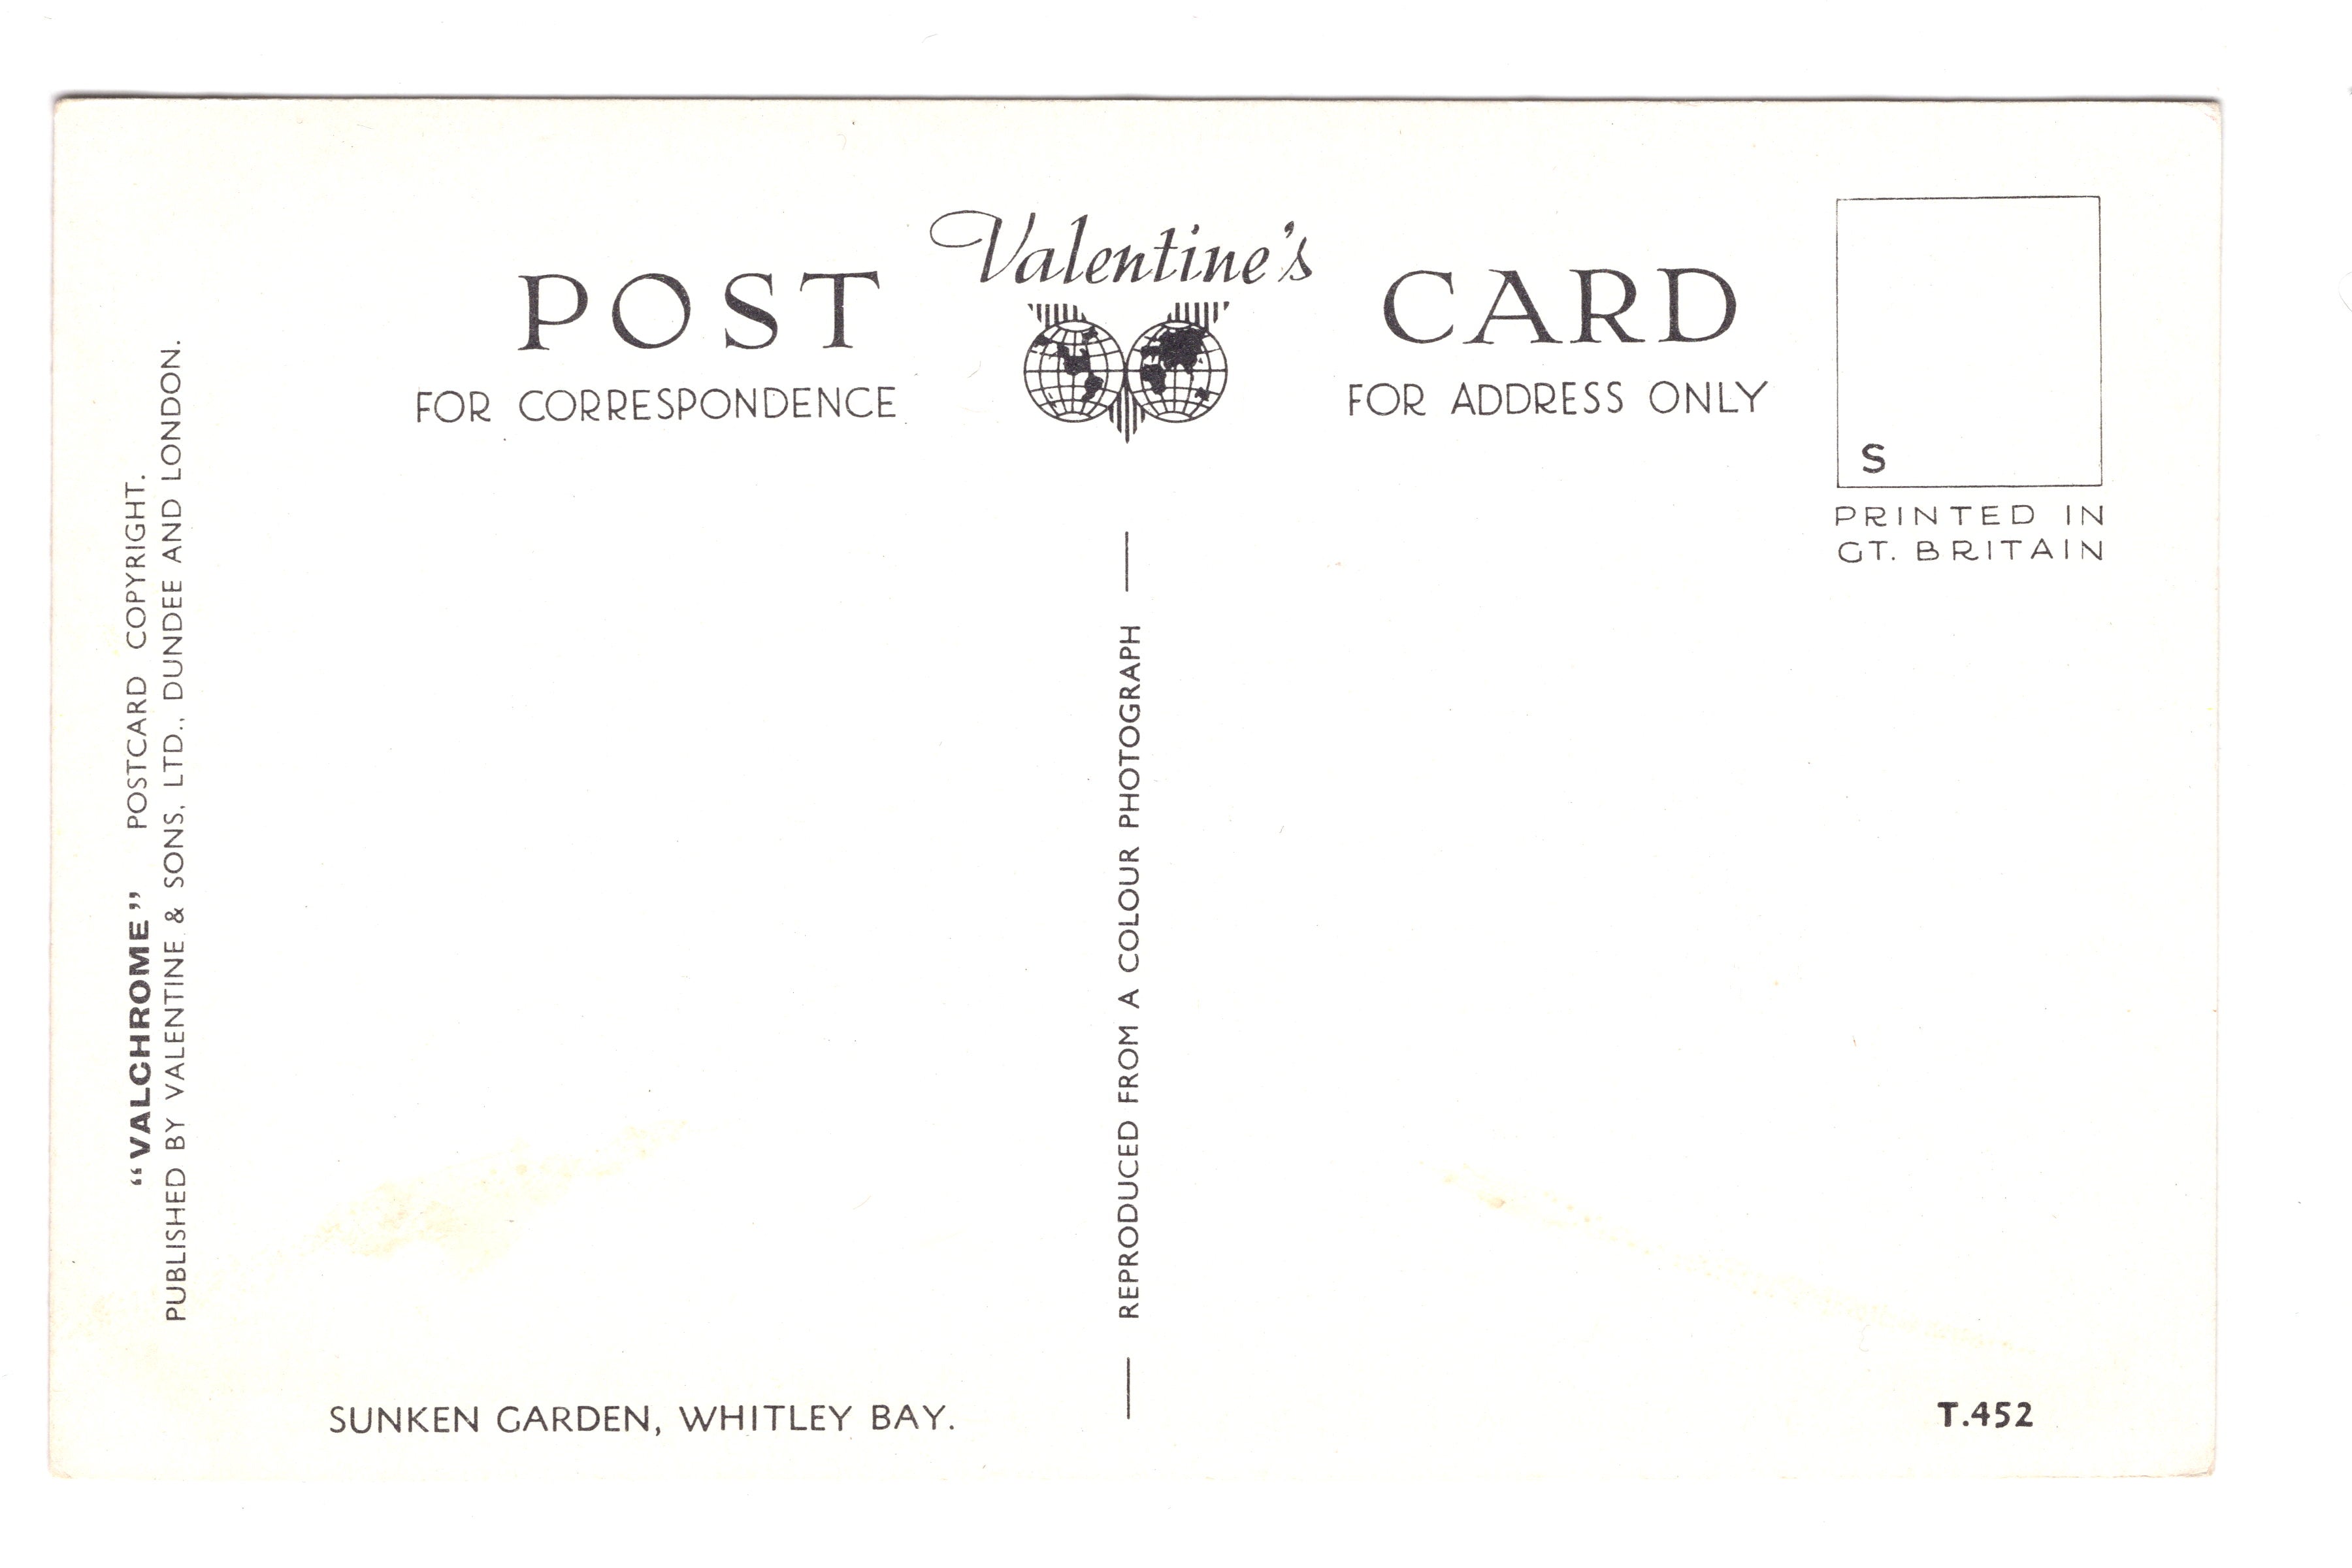 Sunken Garden, Whitley Bay, Vintage Post Card.